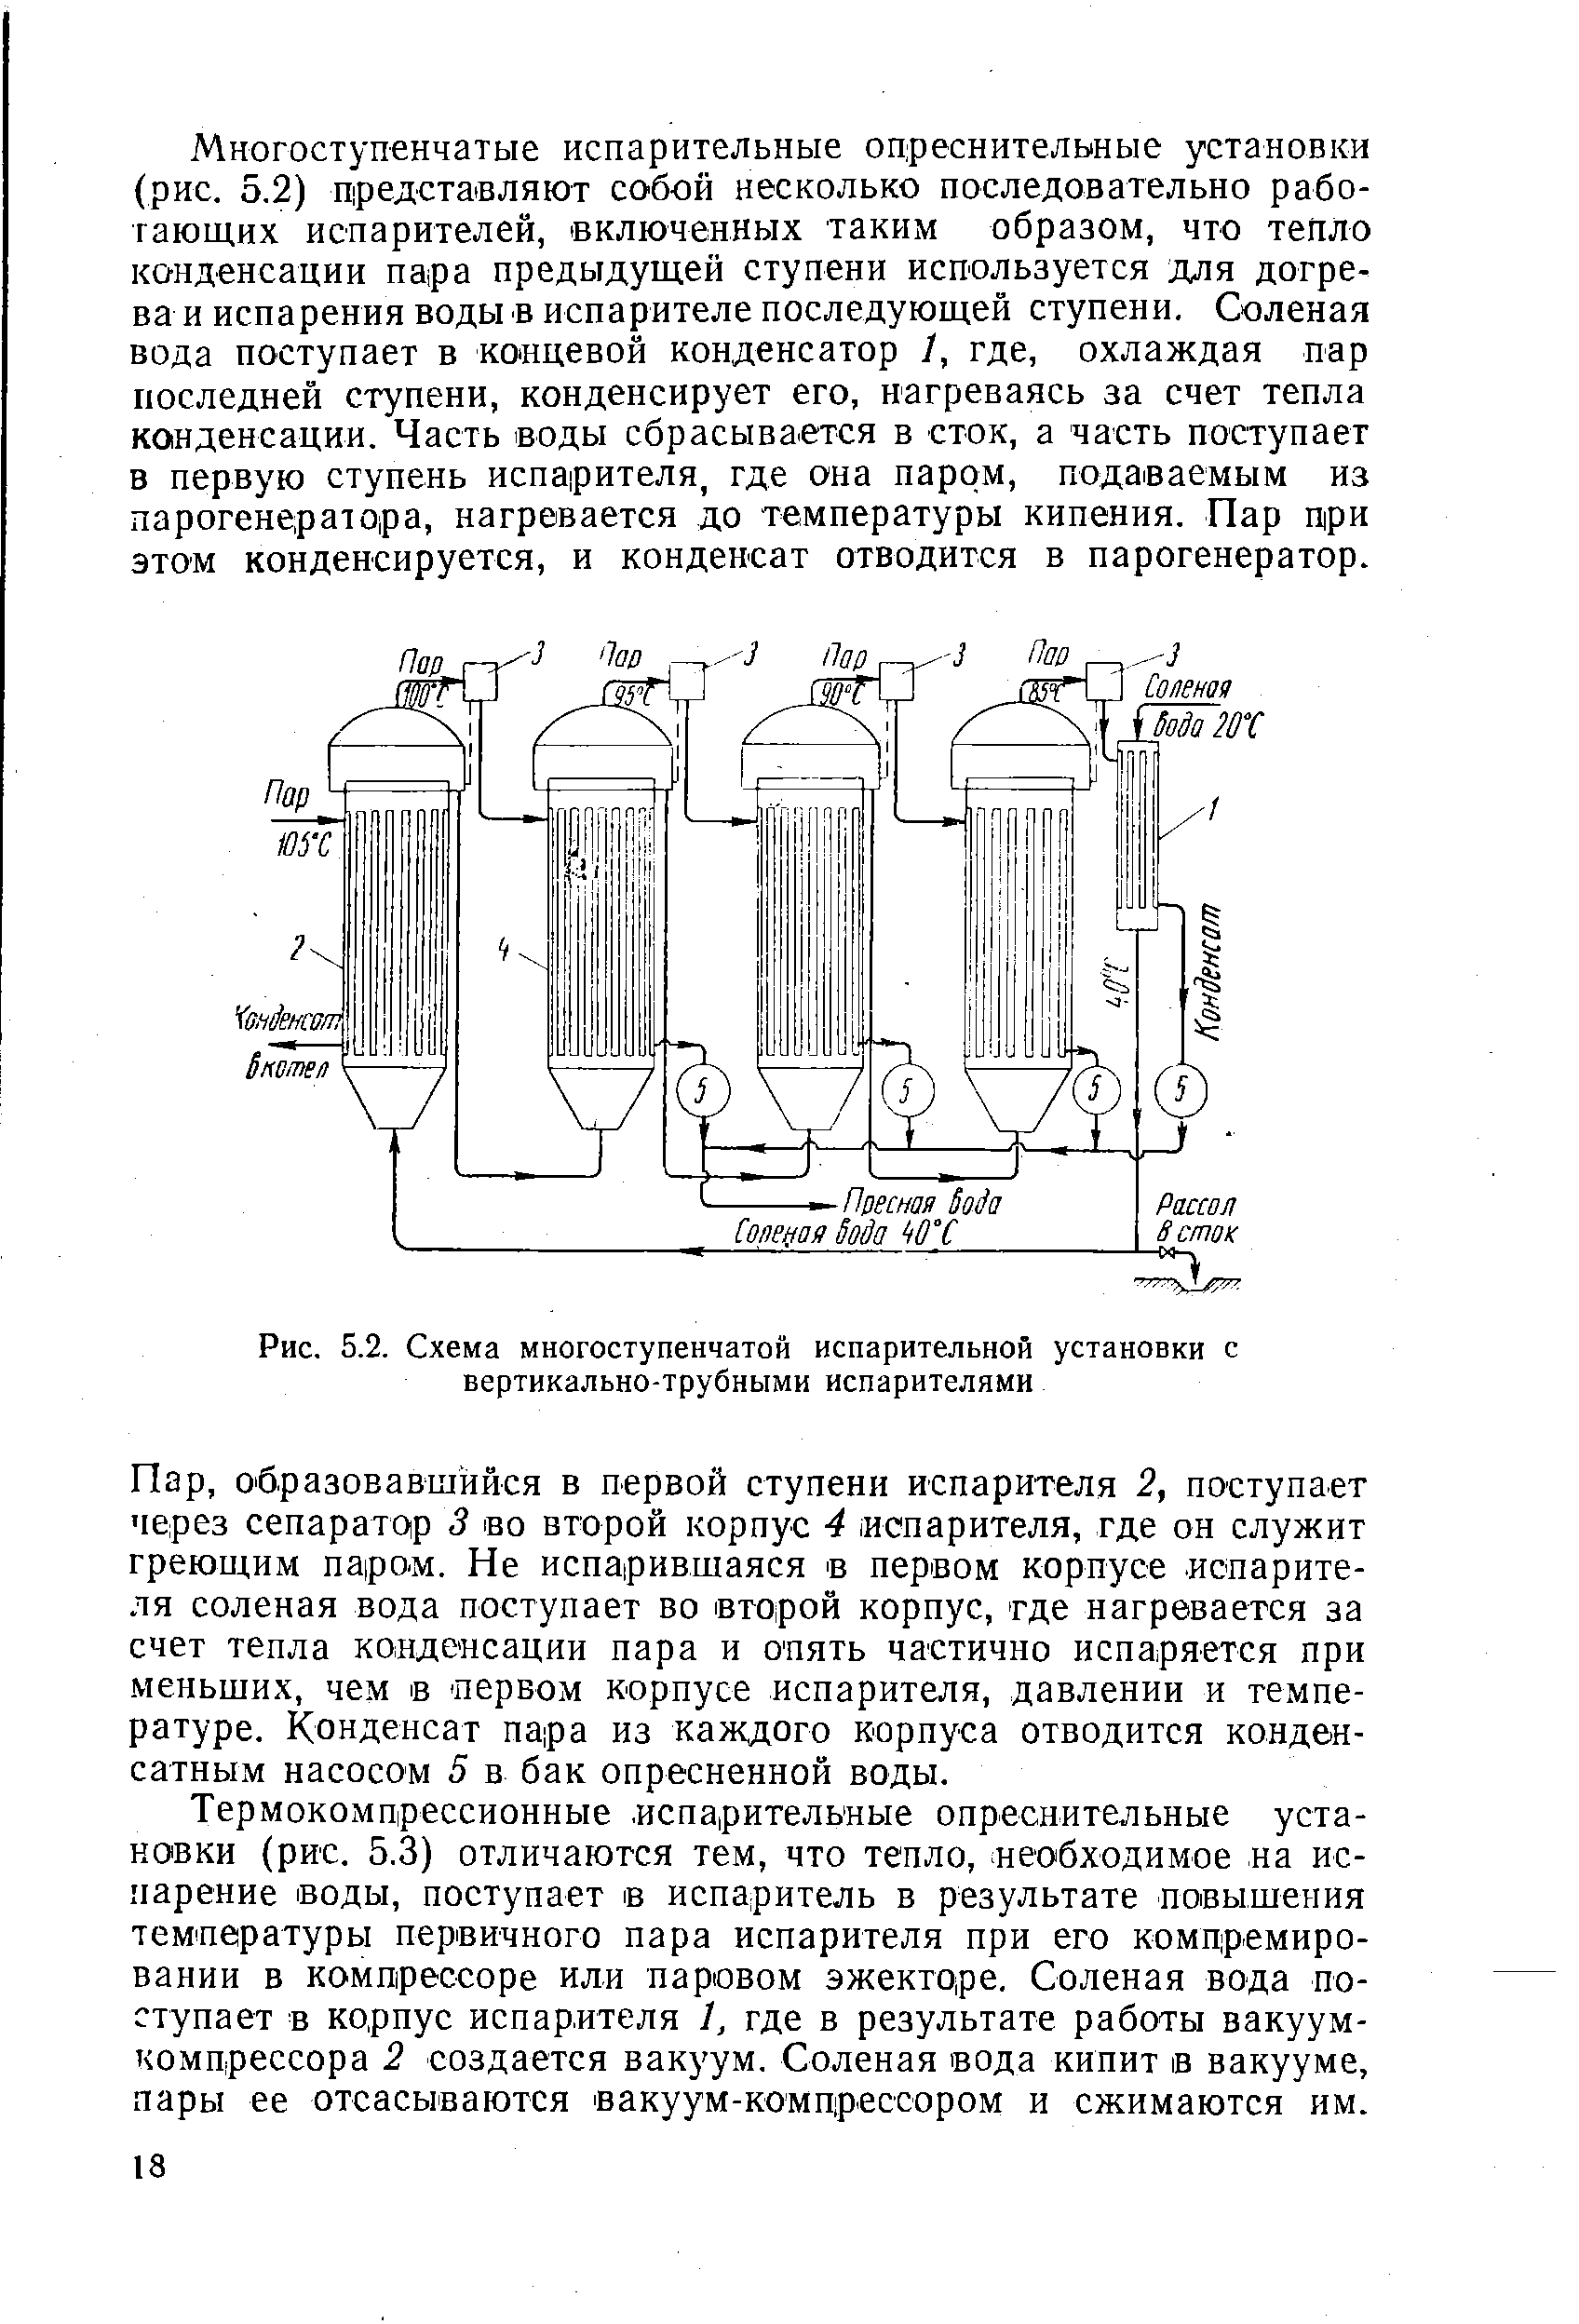 Рис. 5.2. Схема многоступенчатой испарительной установки с вертикально-трубными испарителями
